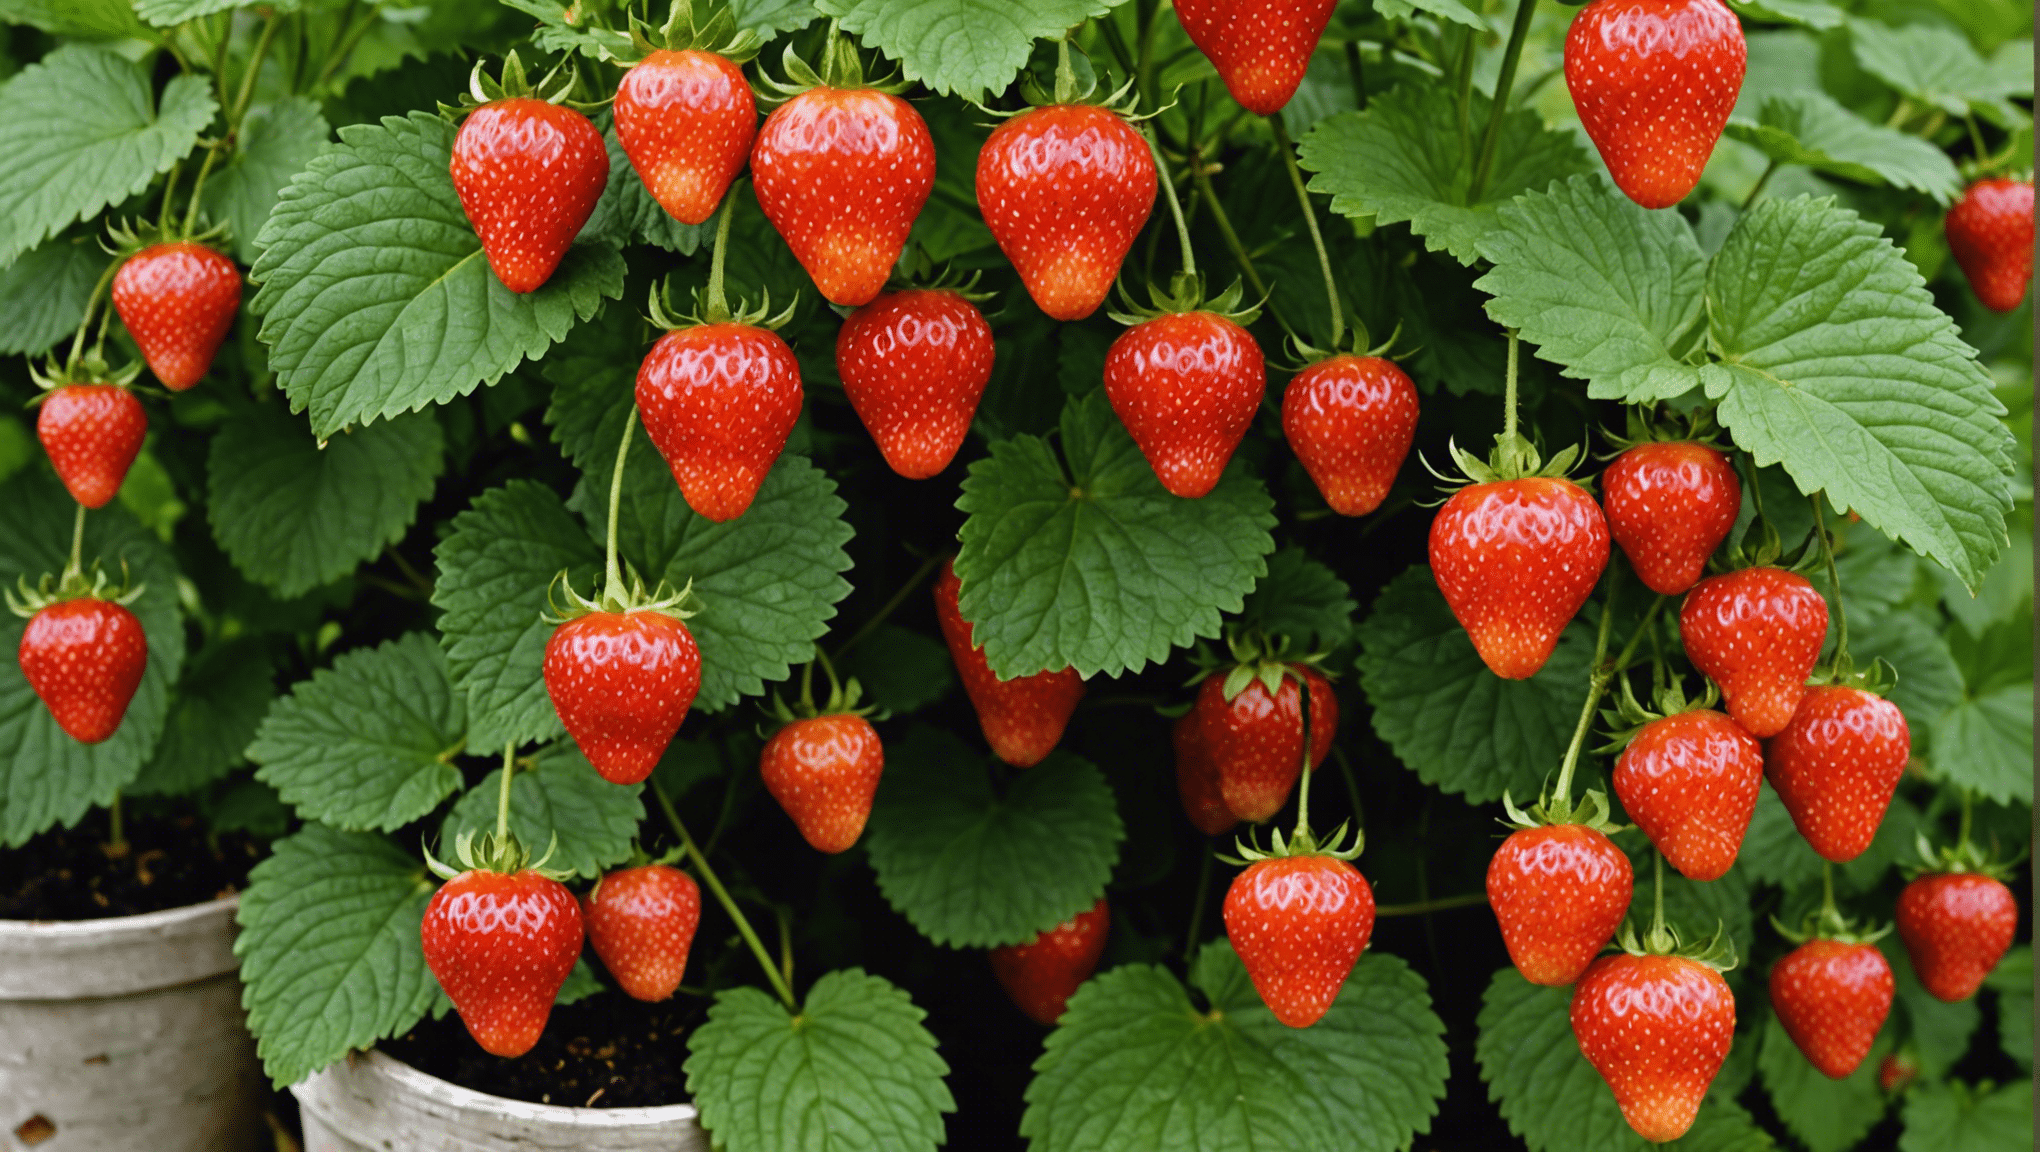 découvrez comment cultiver des fraisiers et obtenir une récolte abondante de fraises avec notre guide pratique. apprenez les meilleures techniques pour des fraises énormes et délicieuses.